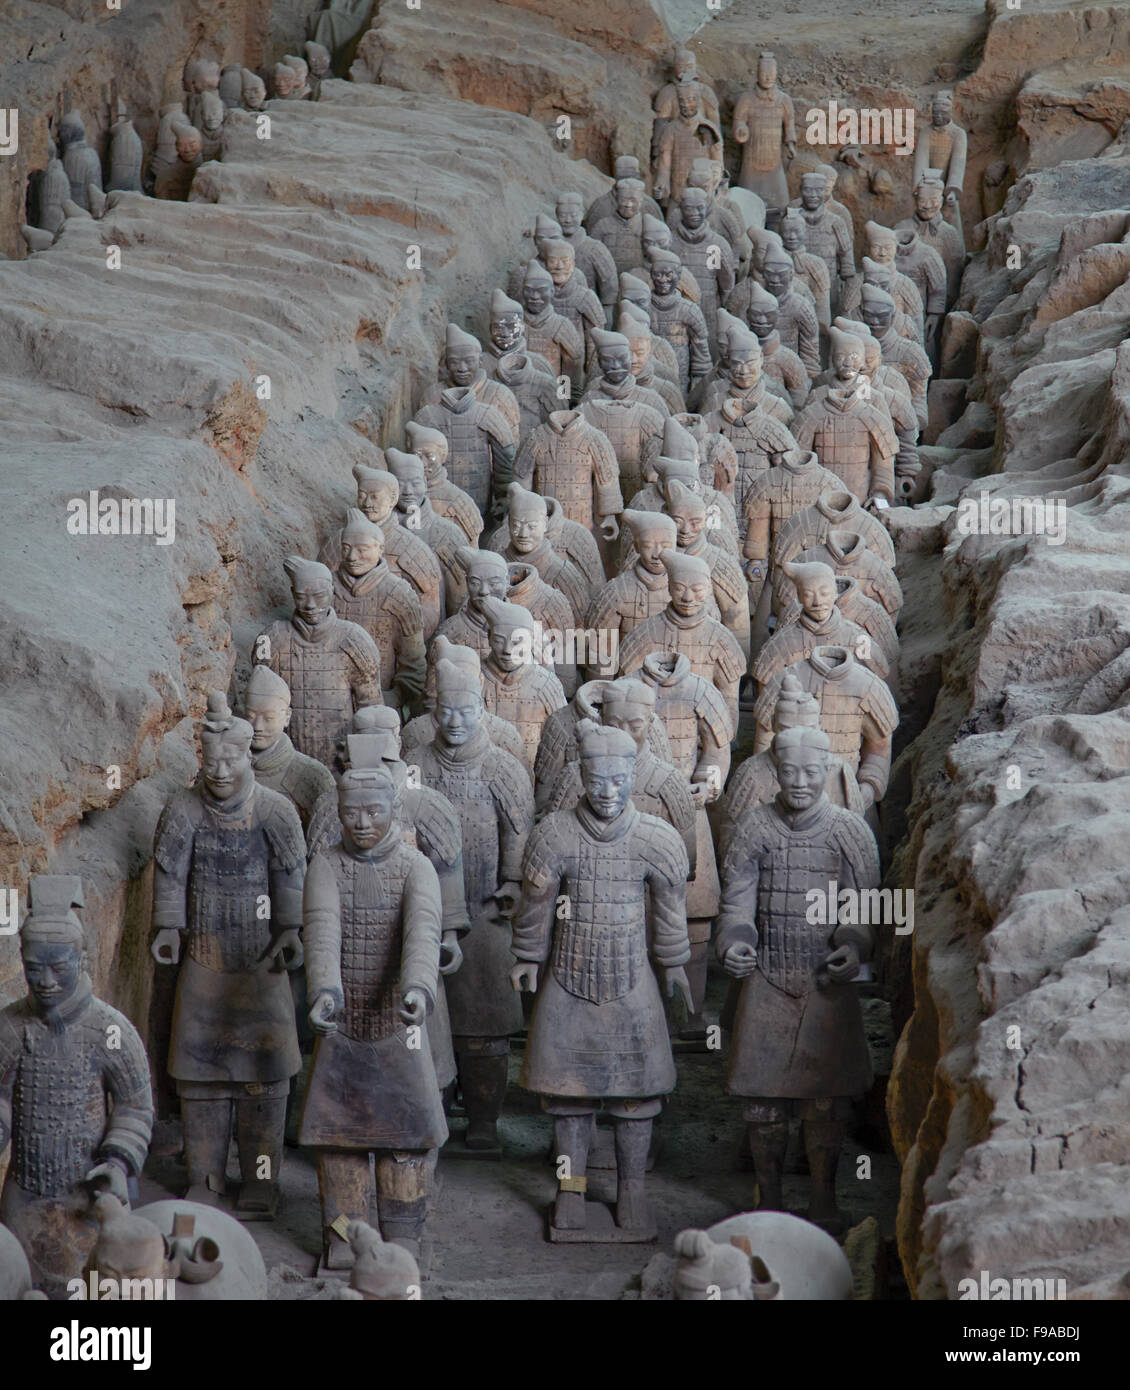 Guerreros de terracota de Xi'an, China Foto de stock